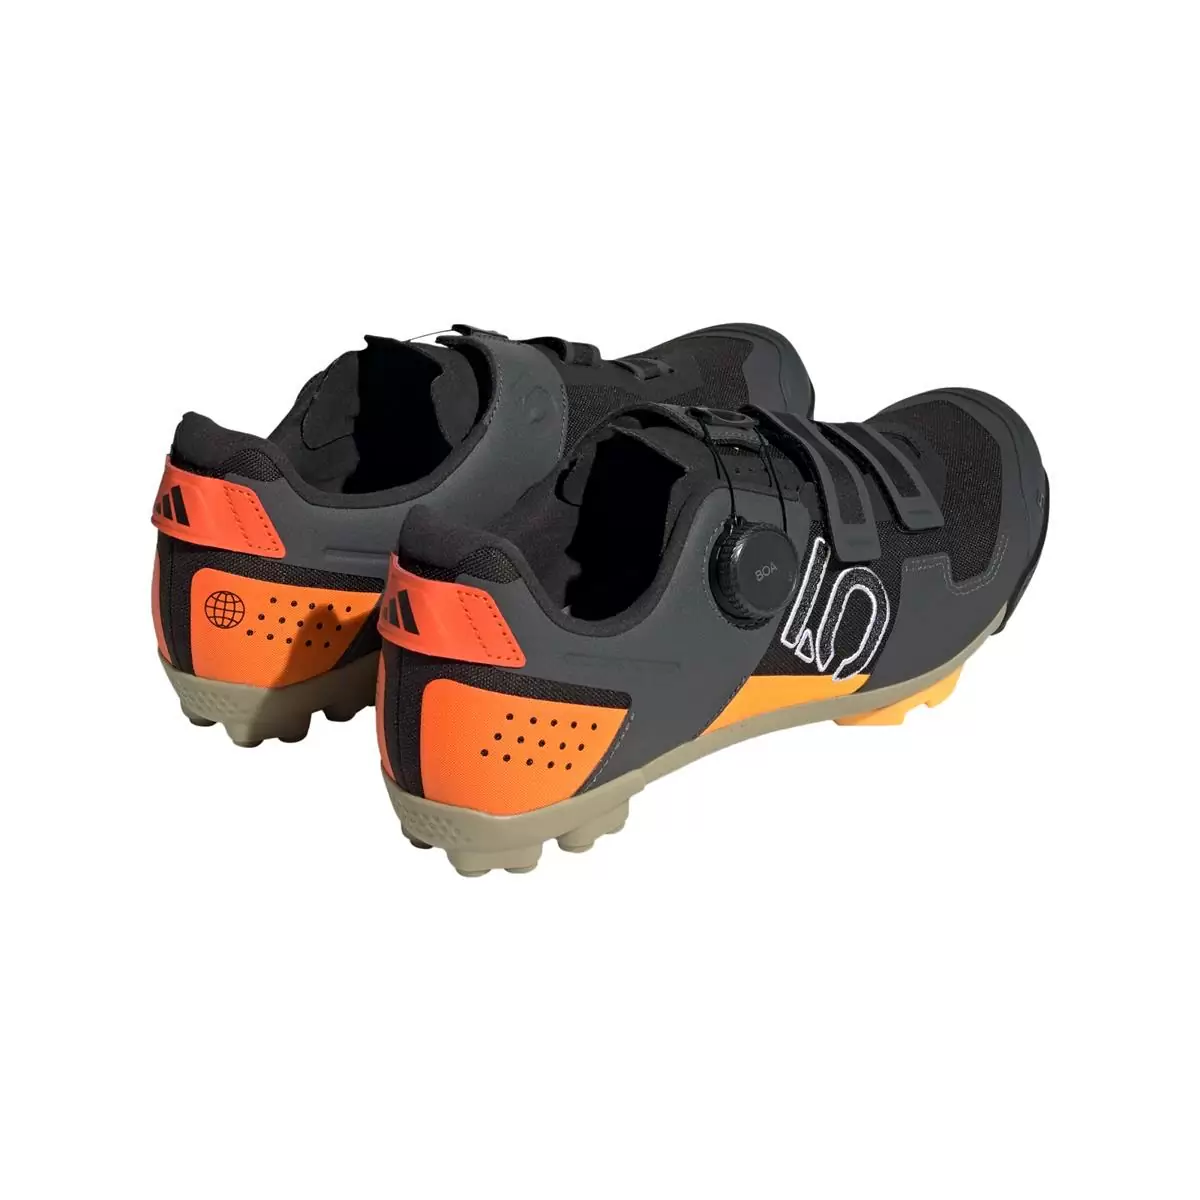 Clip 5.10 Kestrel Boa MTB Shoes Black/Orange Size 42 #4